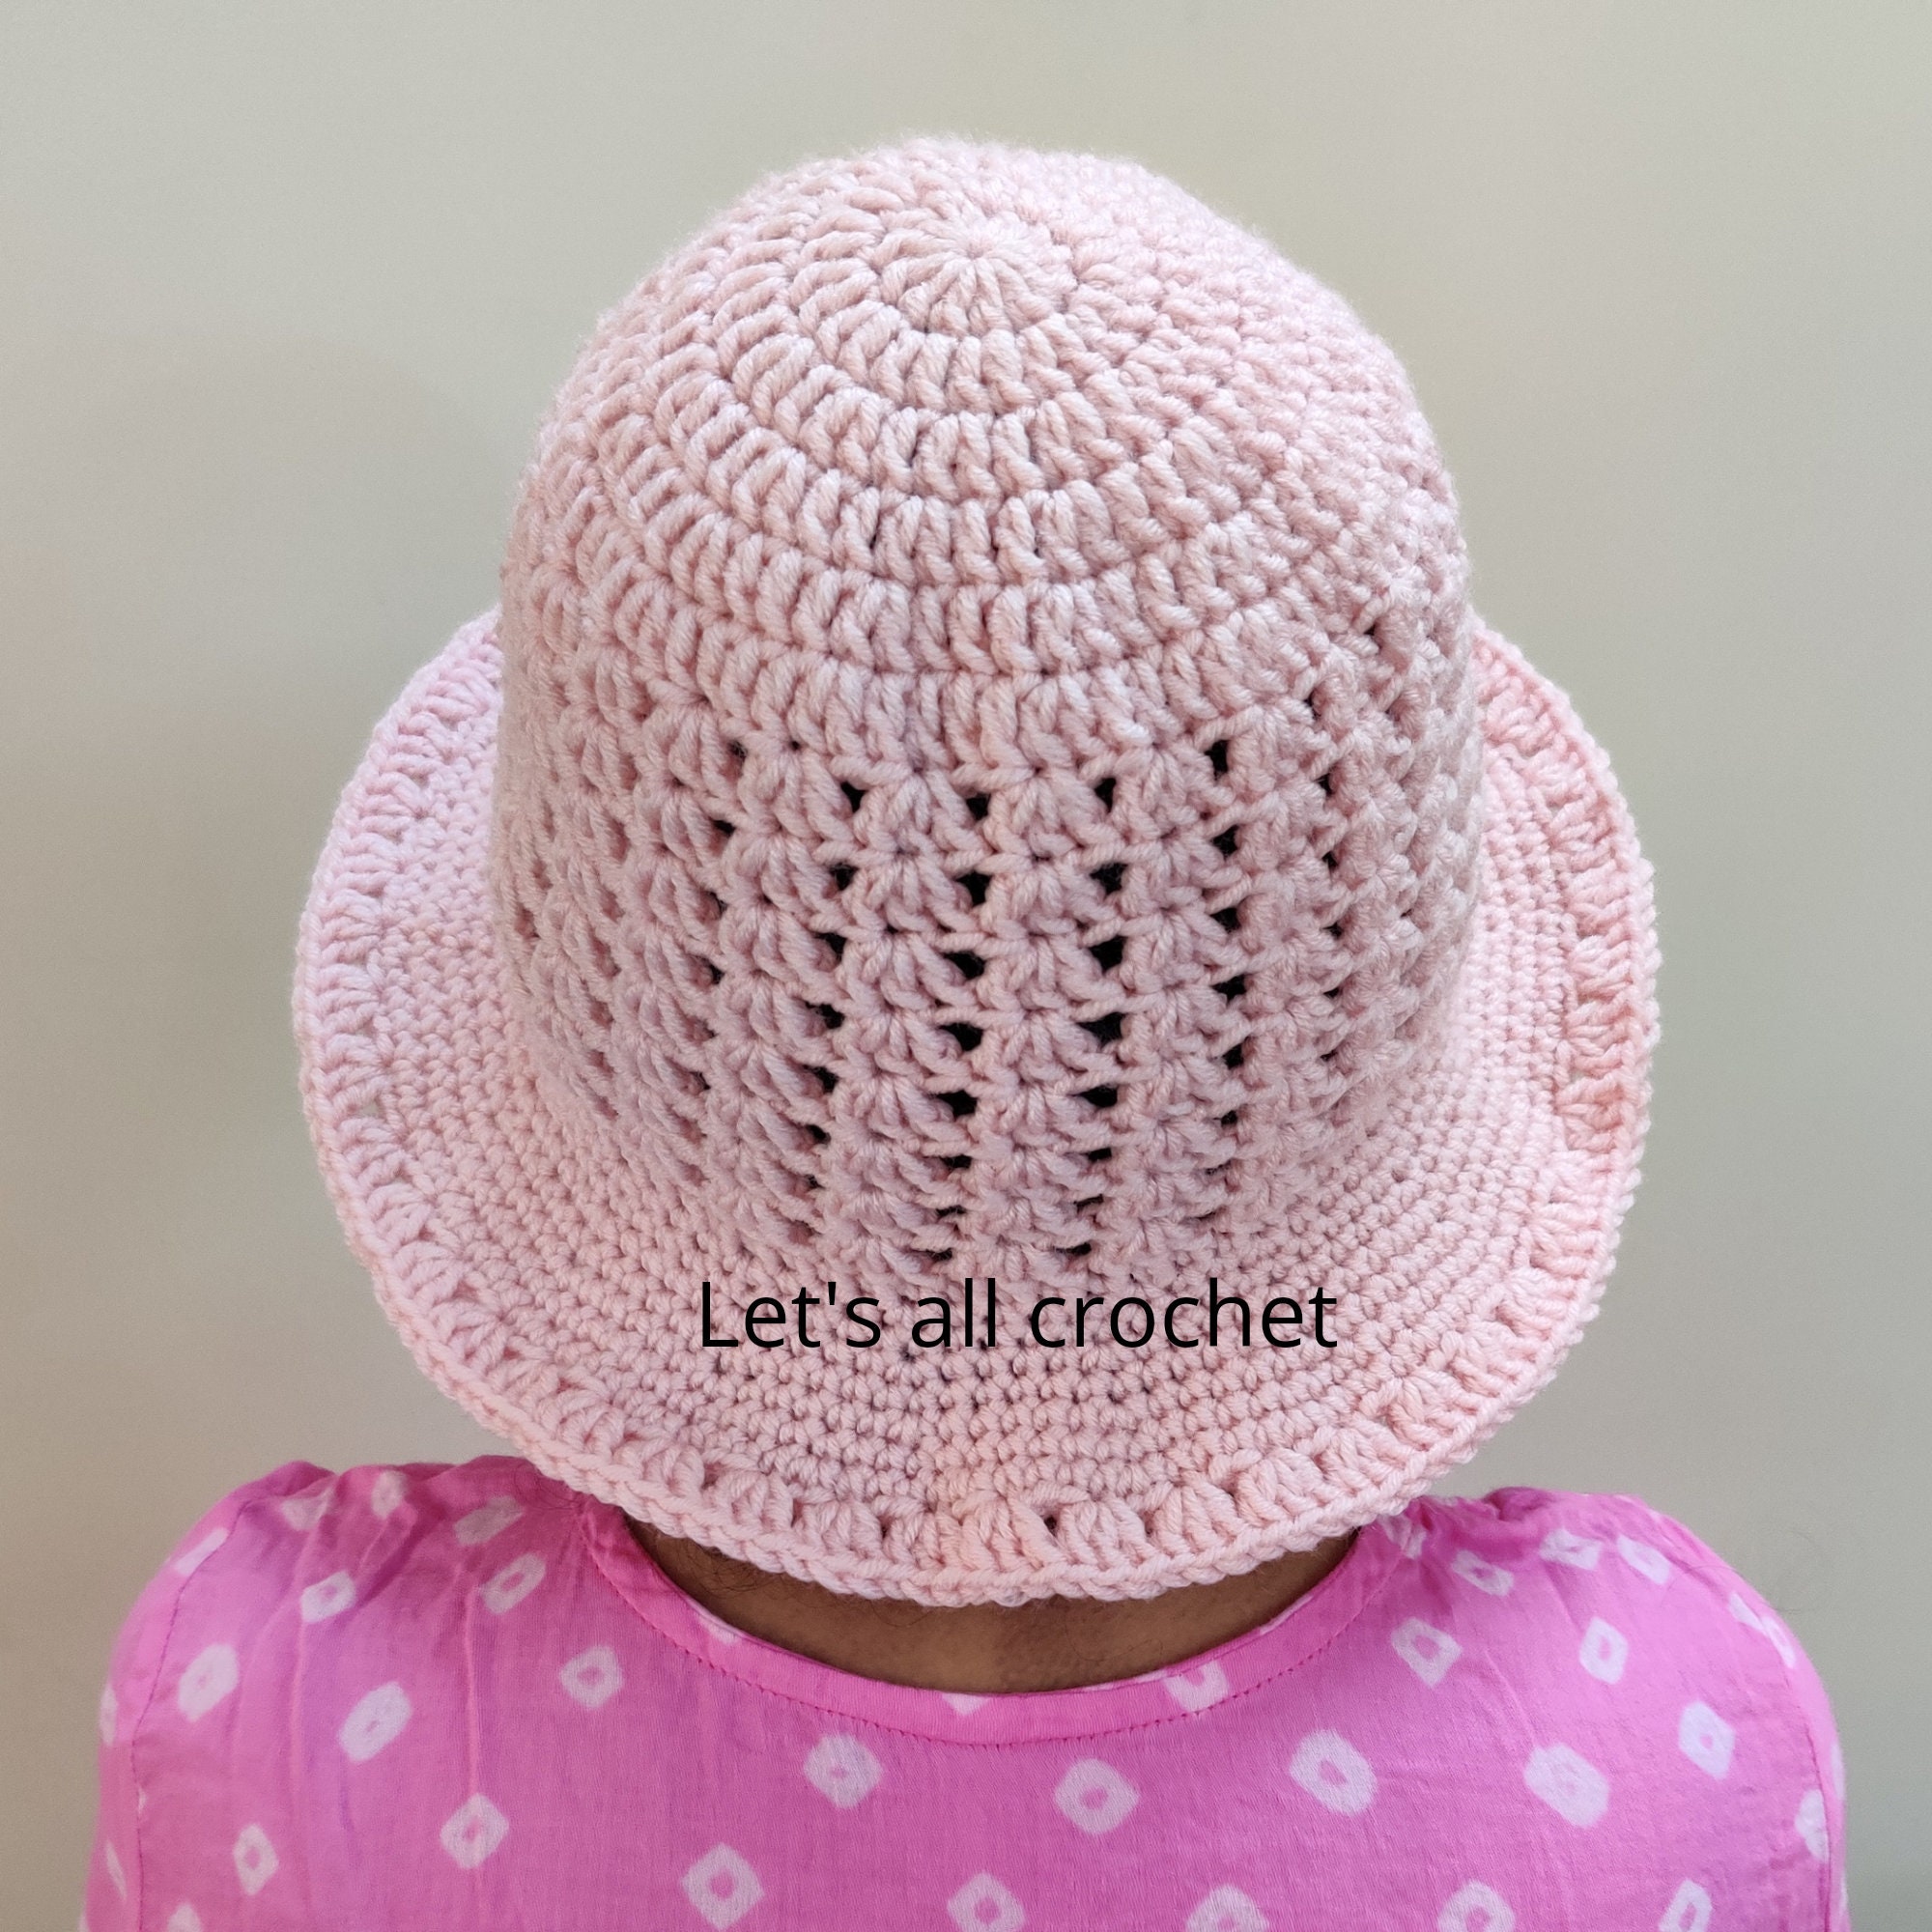 Crochet Easy Lacy Bucket Hat Easy Crochet Pattern for Sun Hat | Etsy